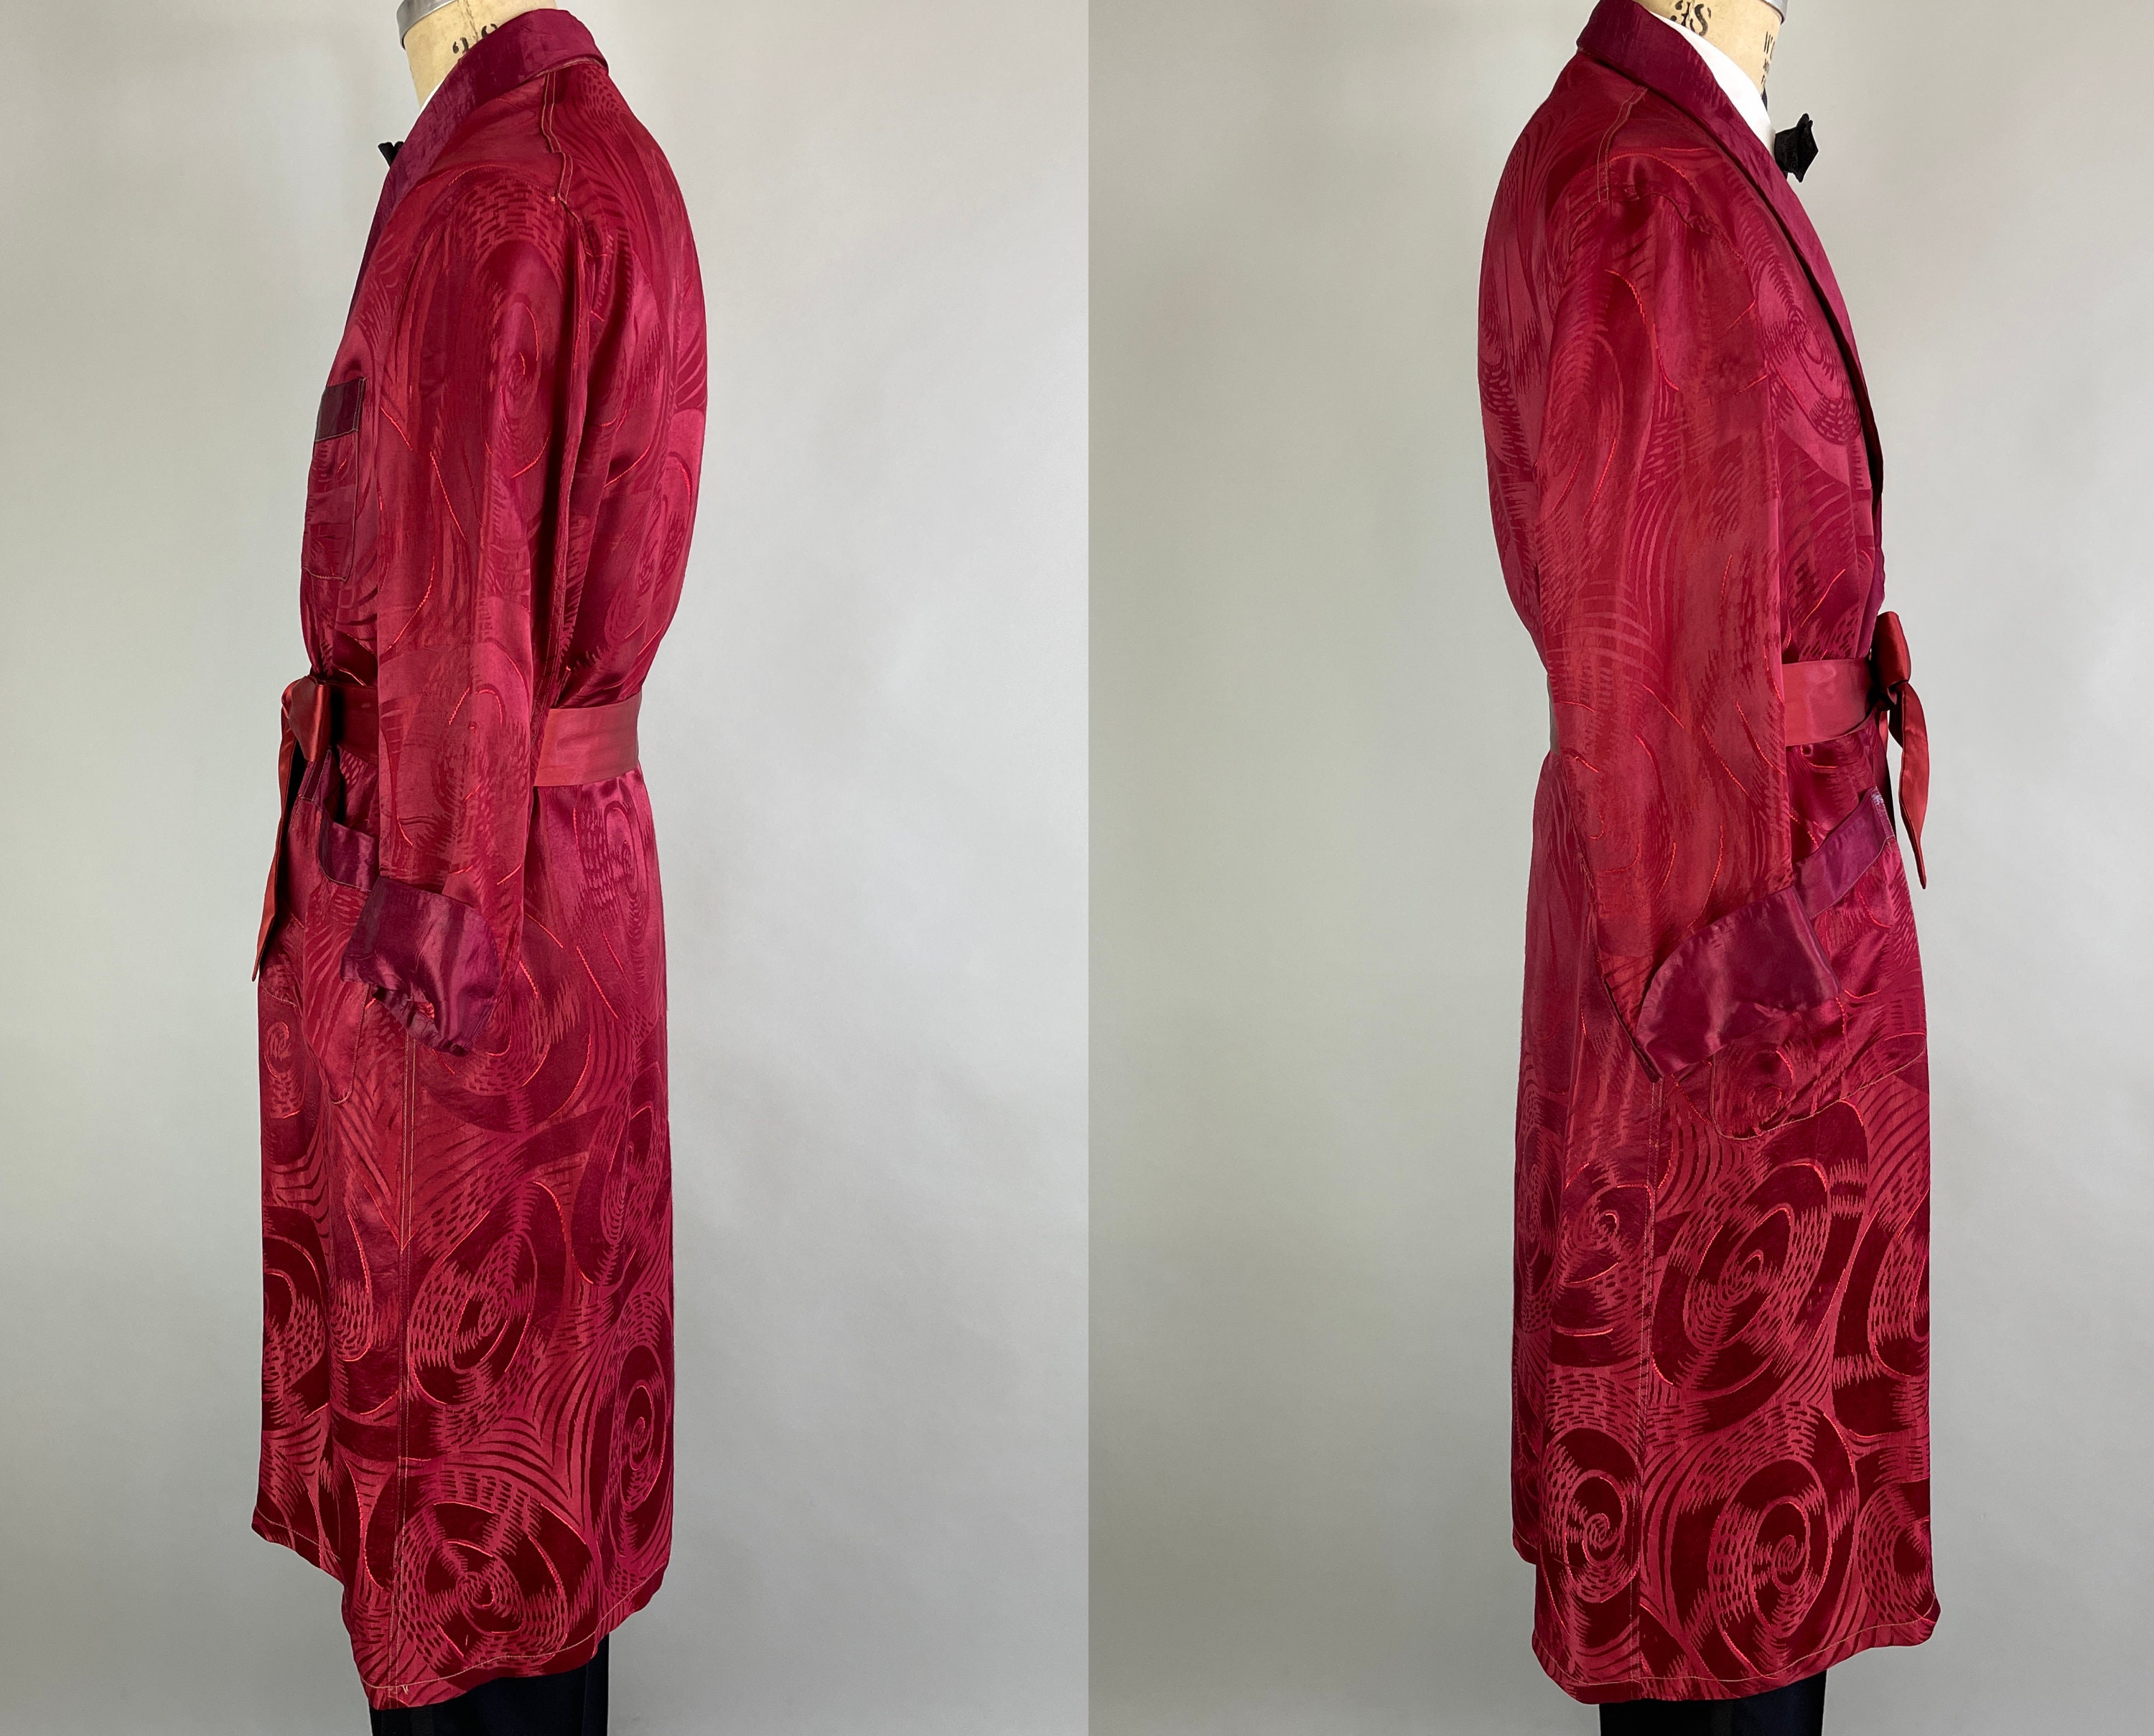 Kleding Herenkleding Pyjamas & Badjassen Jurken vintage jaren 1940 Geometrische donkerrode rayon zijde als roken jas badjas lange mouw heren 